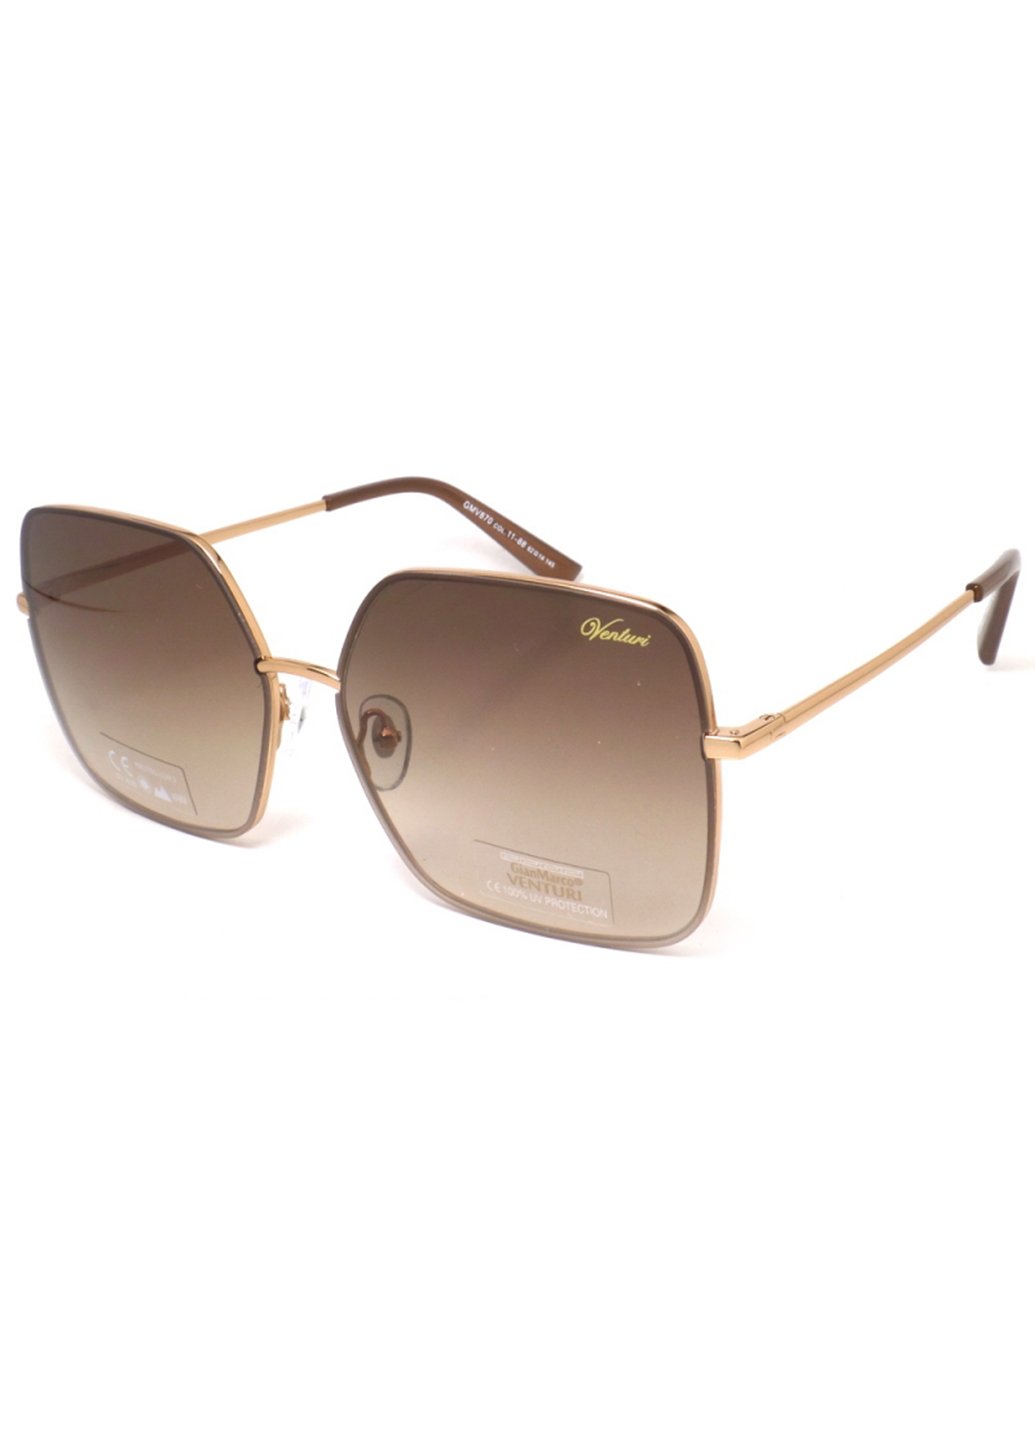 Купить Женские солнцезащитные очки Gian Marco VENTURI GMV870 130010 - Коричневый в интернет-магазине